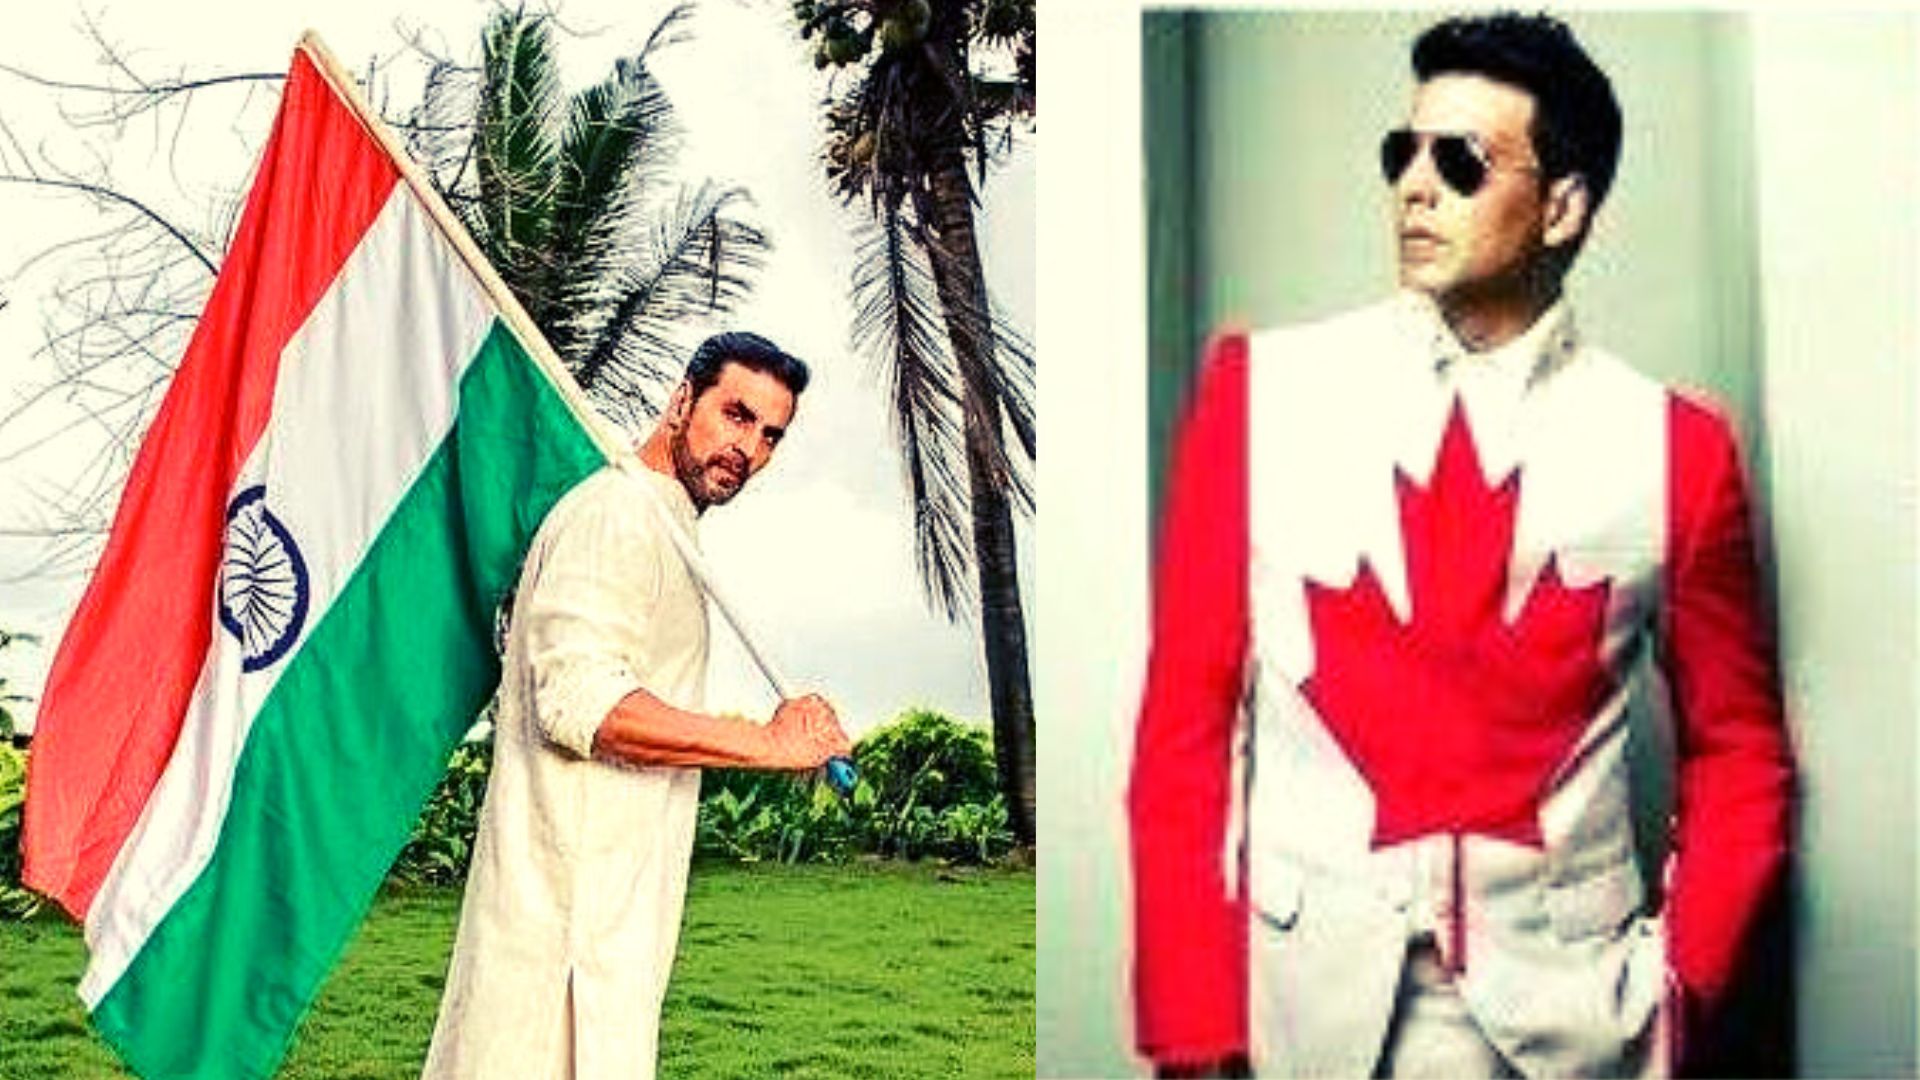 अक्षय कुमार को 3 साल बाद मिलेगा इंडियन पासपोर्ट, जानिए क्या हुआ कनाडा का?